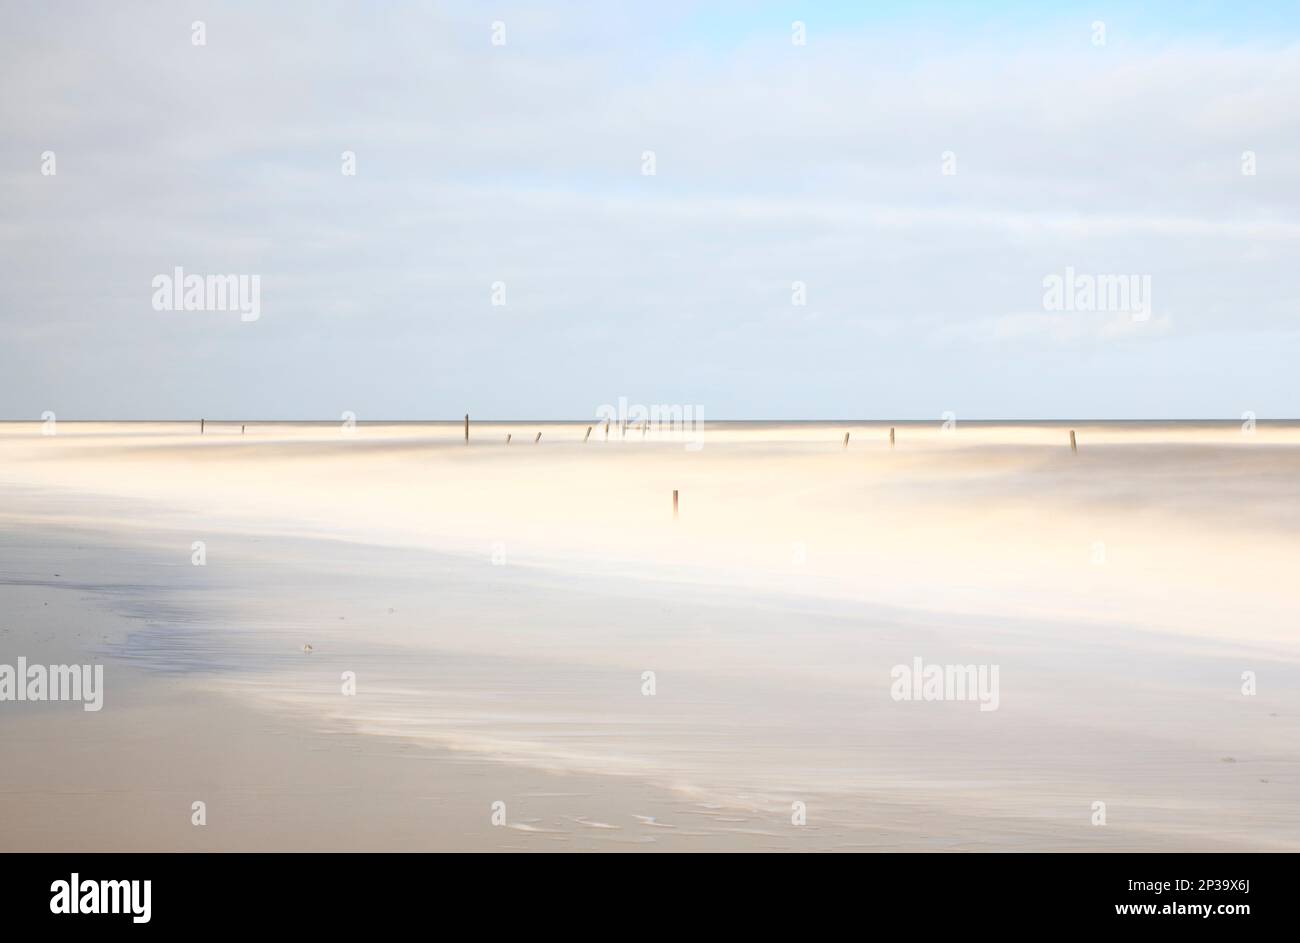 Eine lange Exposition an der Küste mit verlassenen Wellenbrechern im Meer an der Norfolkküste in Happisburgh, Norfolk, England, Großbritannien. Stockfoto